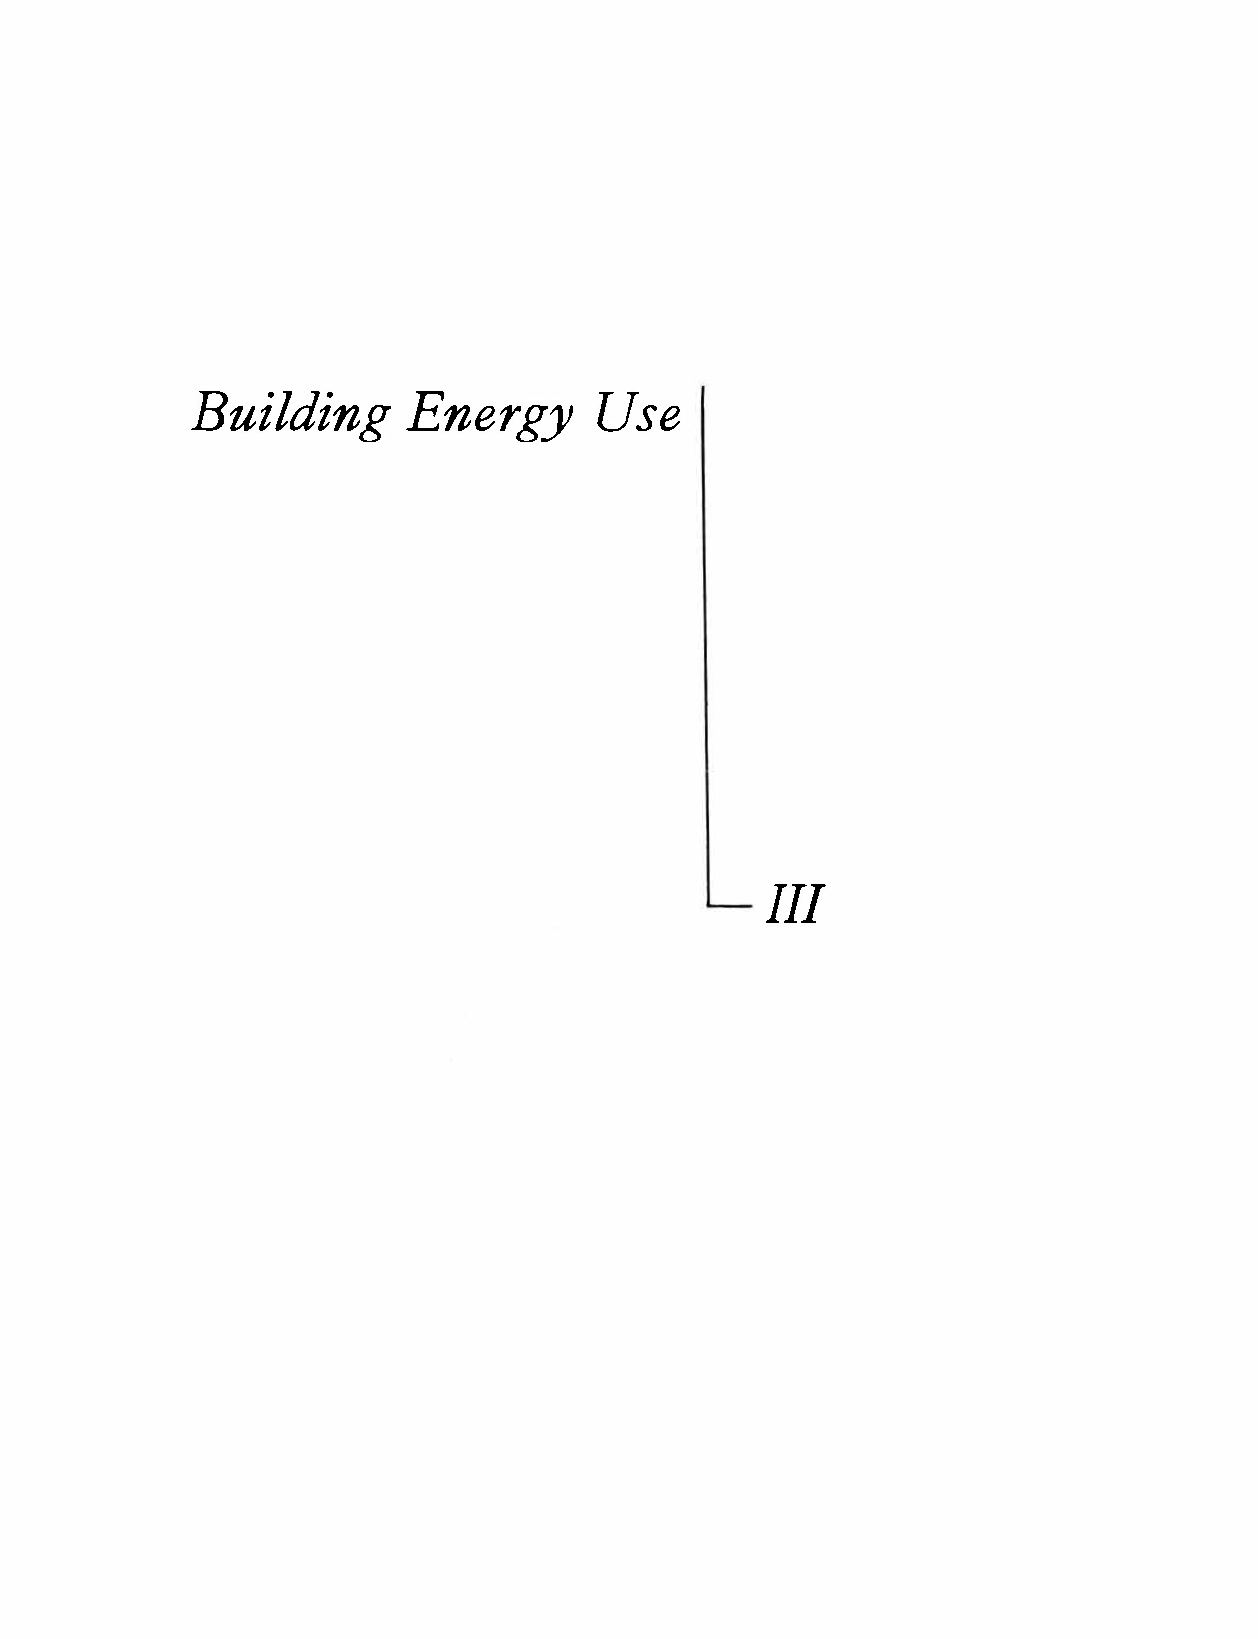 III Building Energy Use